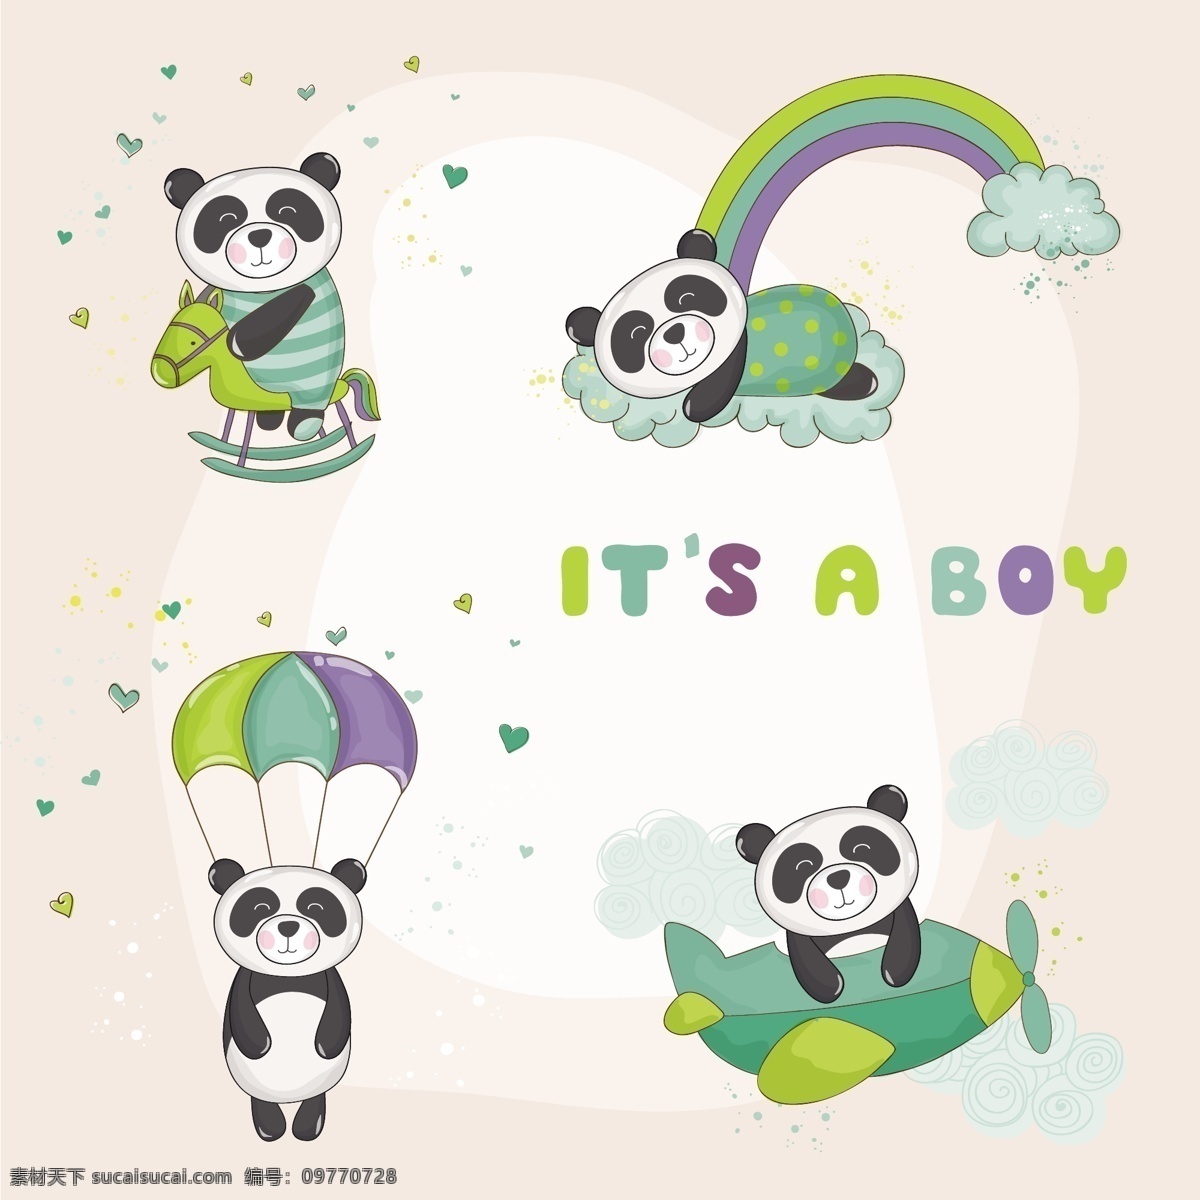 卡通 熊猫 矢量 彩虹 降落伞 矢量素材 设计素材